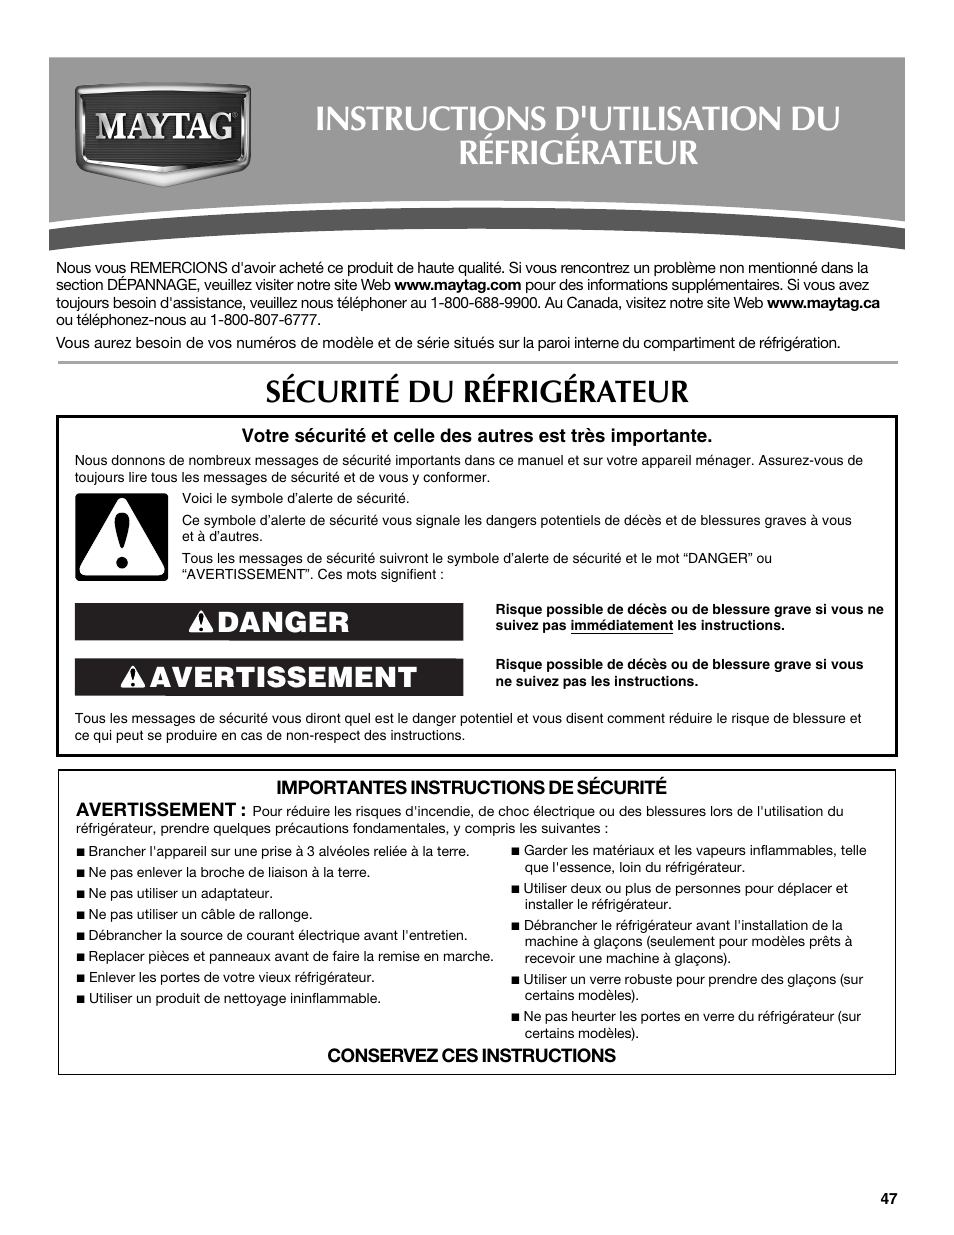 Instructions d'utilisation du réfrigérateur, Sécurité du réfrigérateur, Avertissement danger | Maytag MFX2570AEM User Manual | Page 47 / 70